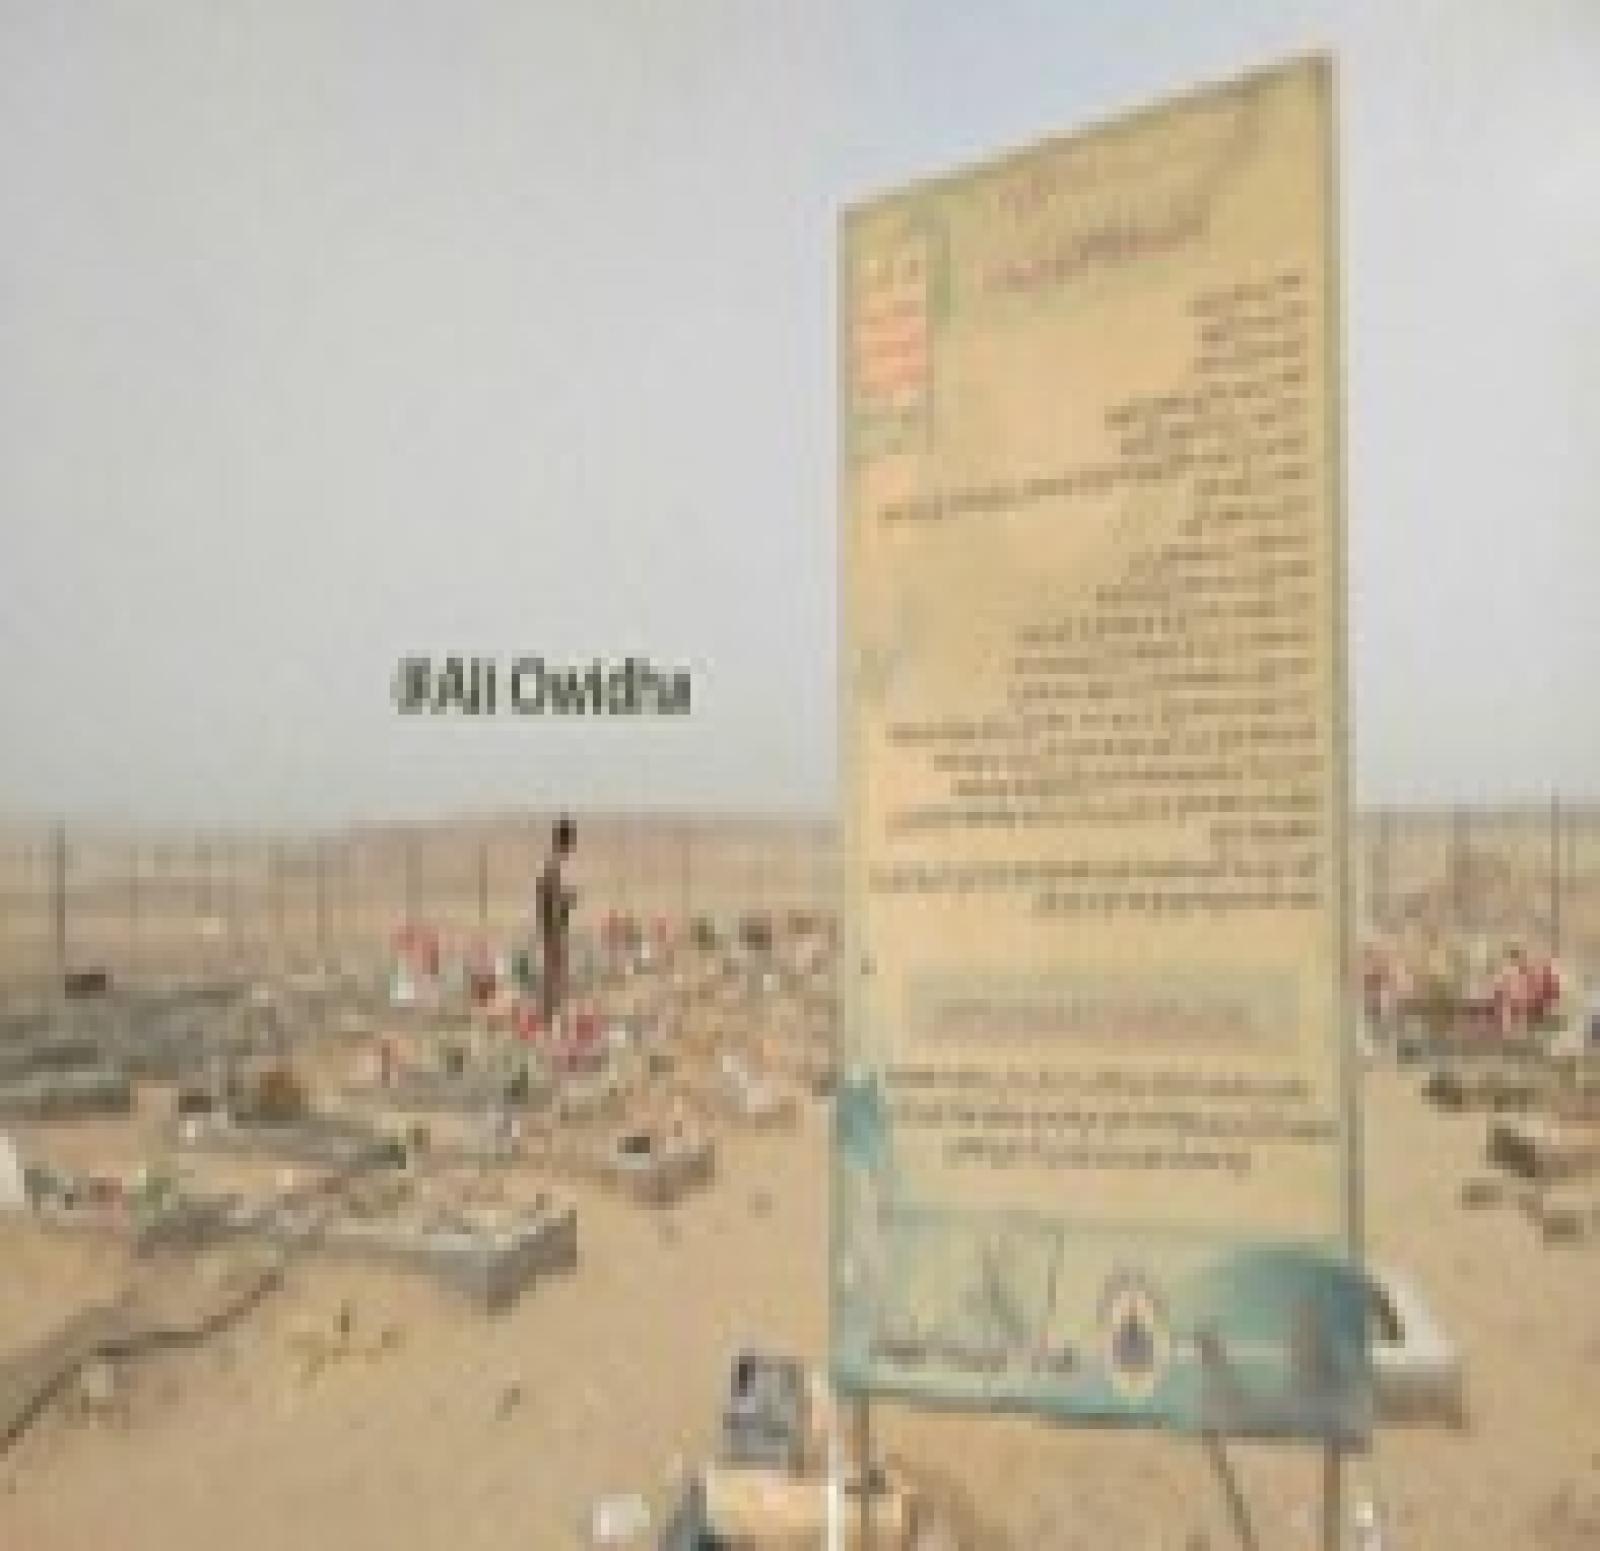 تحويل مساحة كبيرة من مدينة براقش الى مقابر لجماعة الحوثي  ، موقع المشهد اليمني ، 13 مارس 2016 